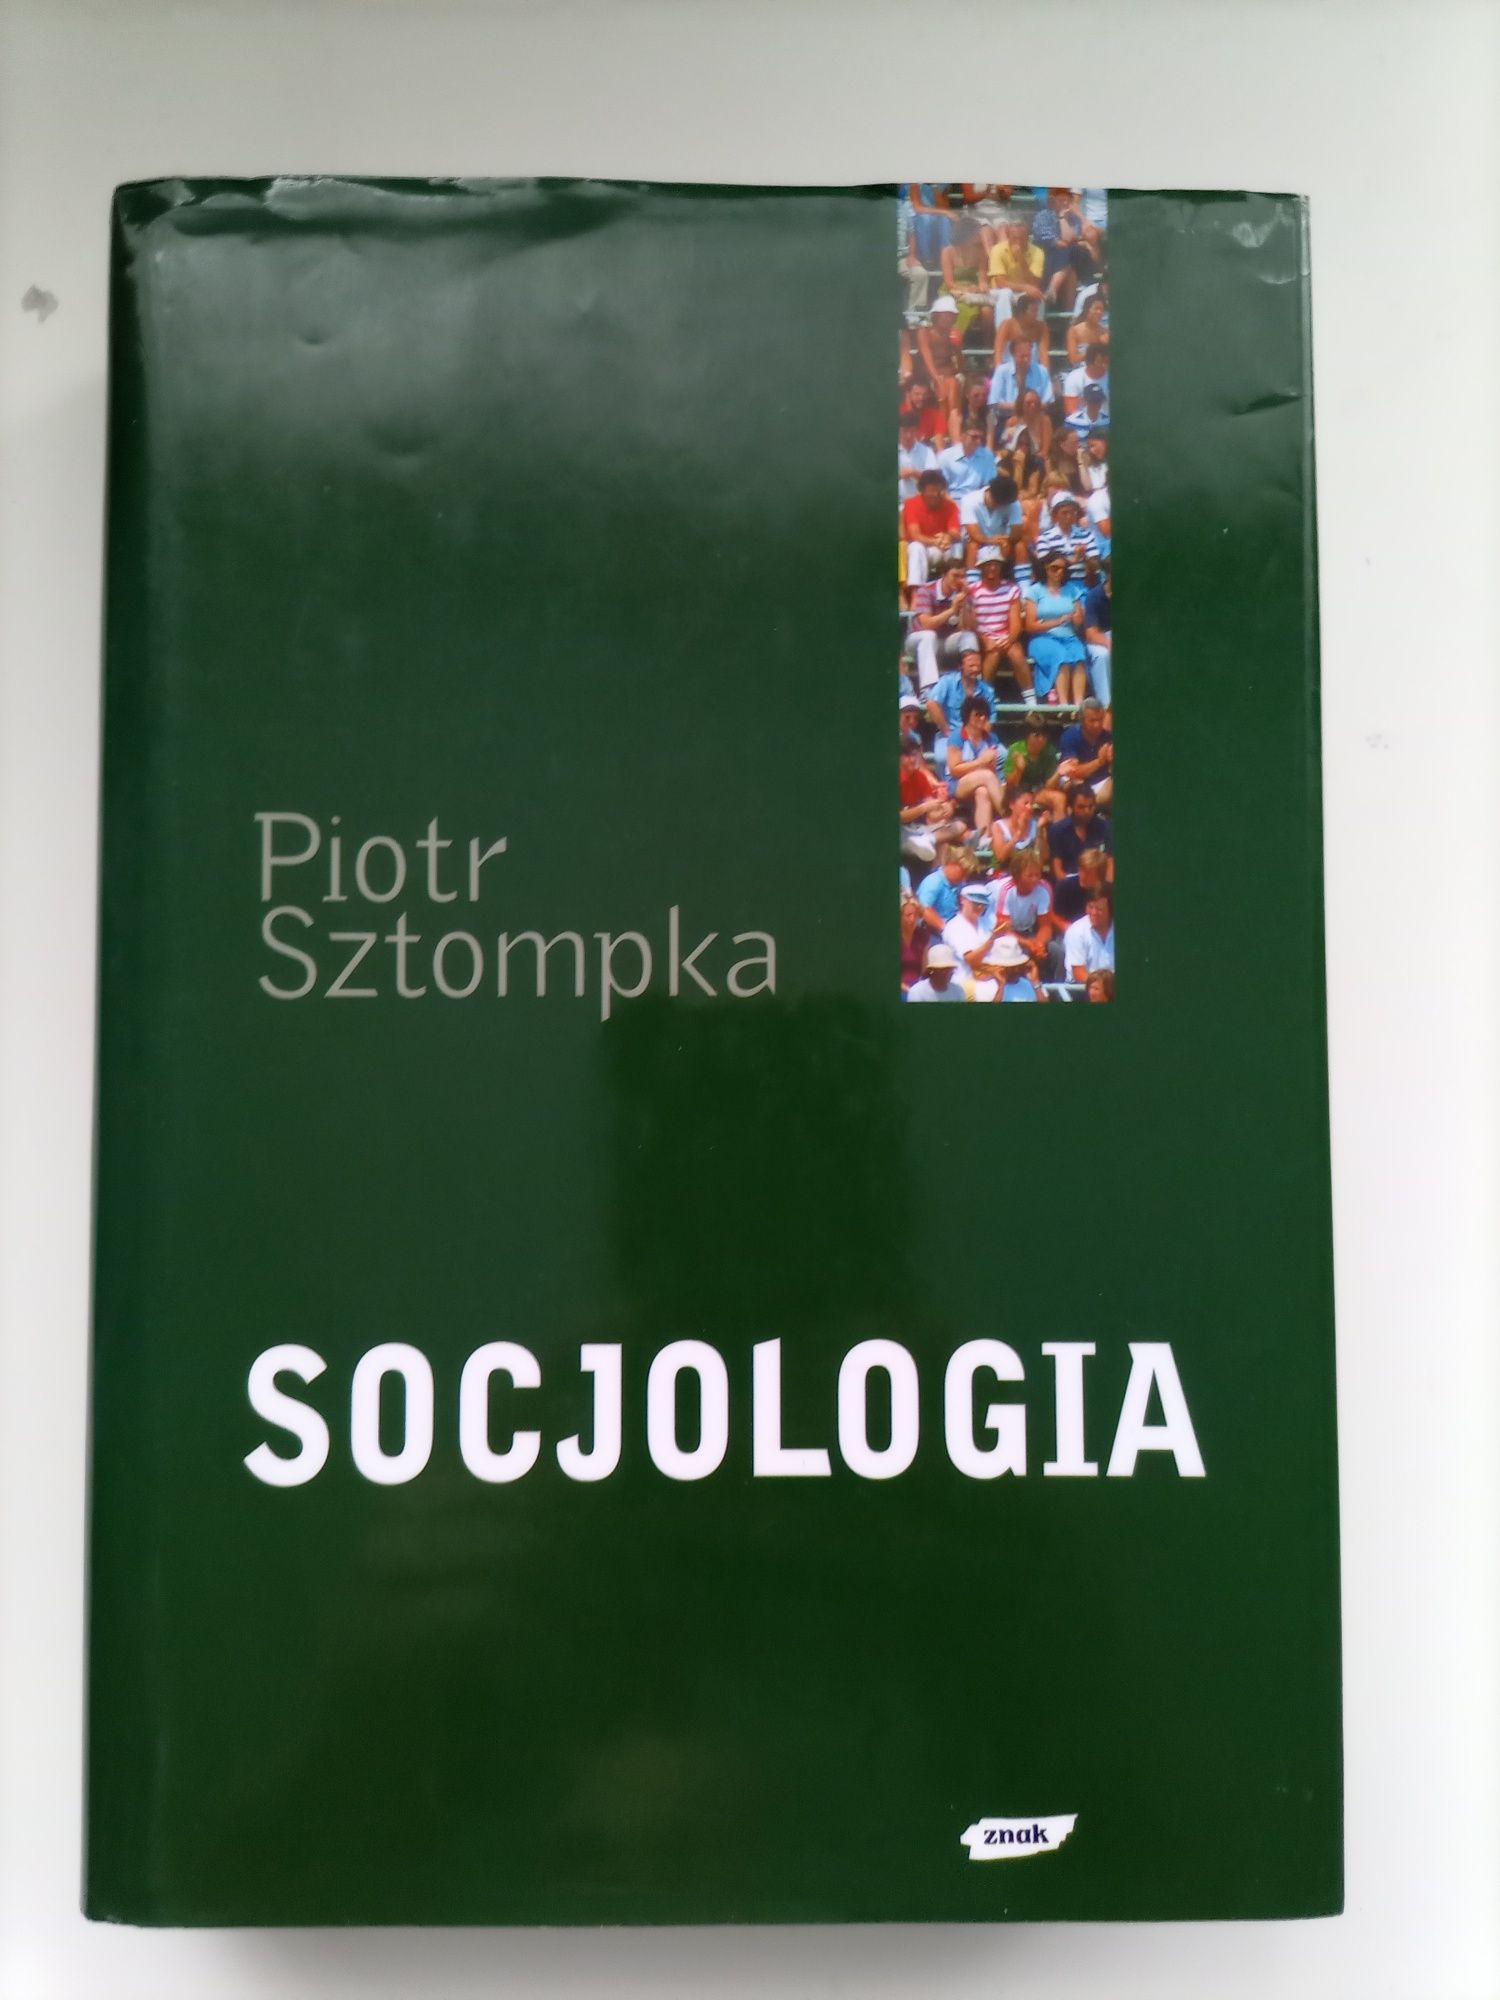 NOWA Piotr Sztompka Socjologia